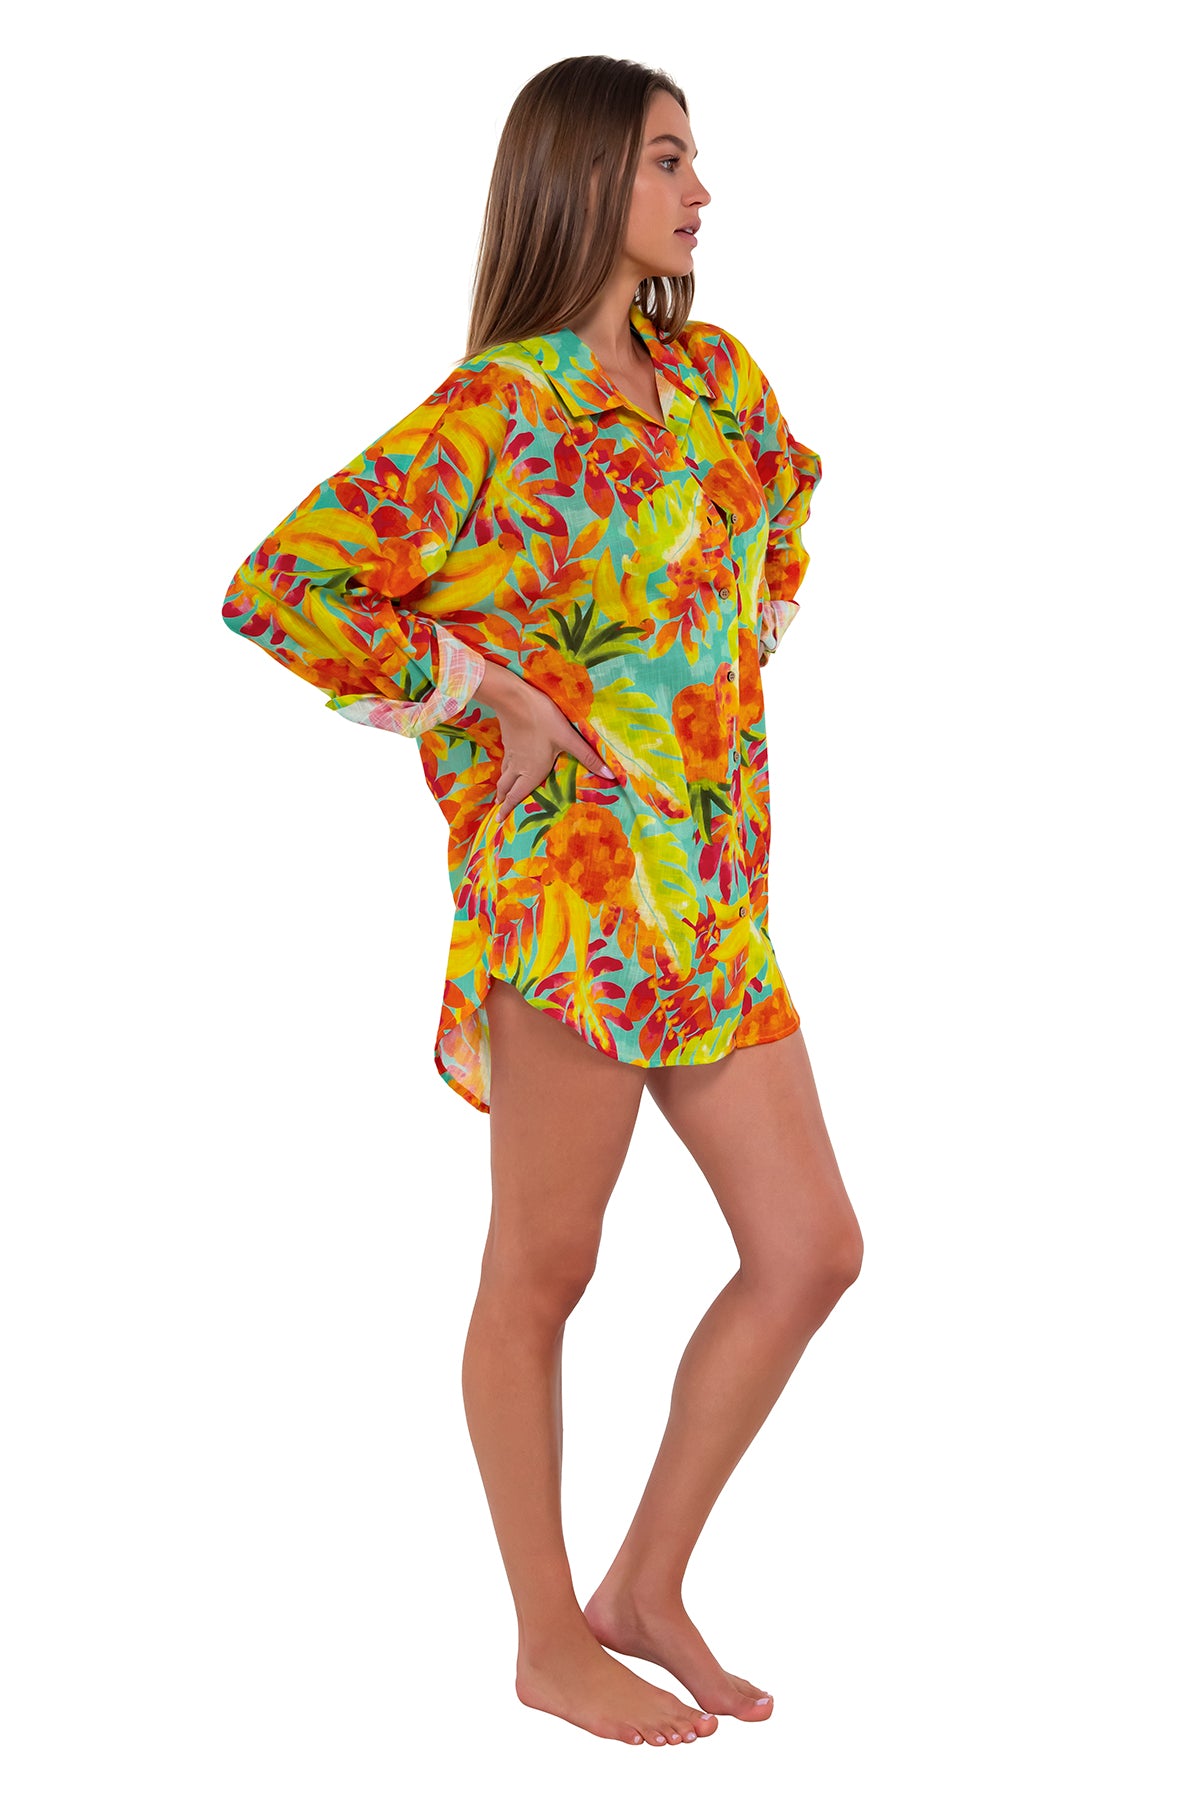 Side pose #1 of Daria wearing Sunsets Lush Luau Delilah Shirt